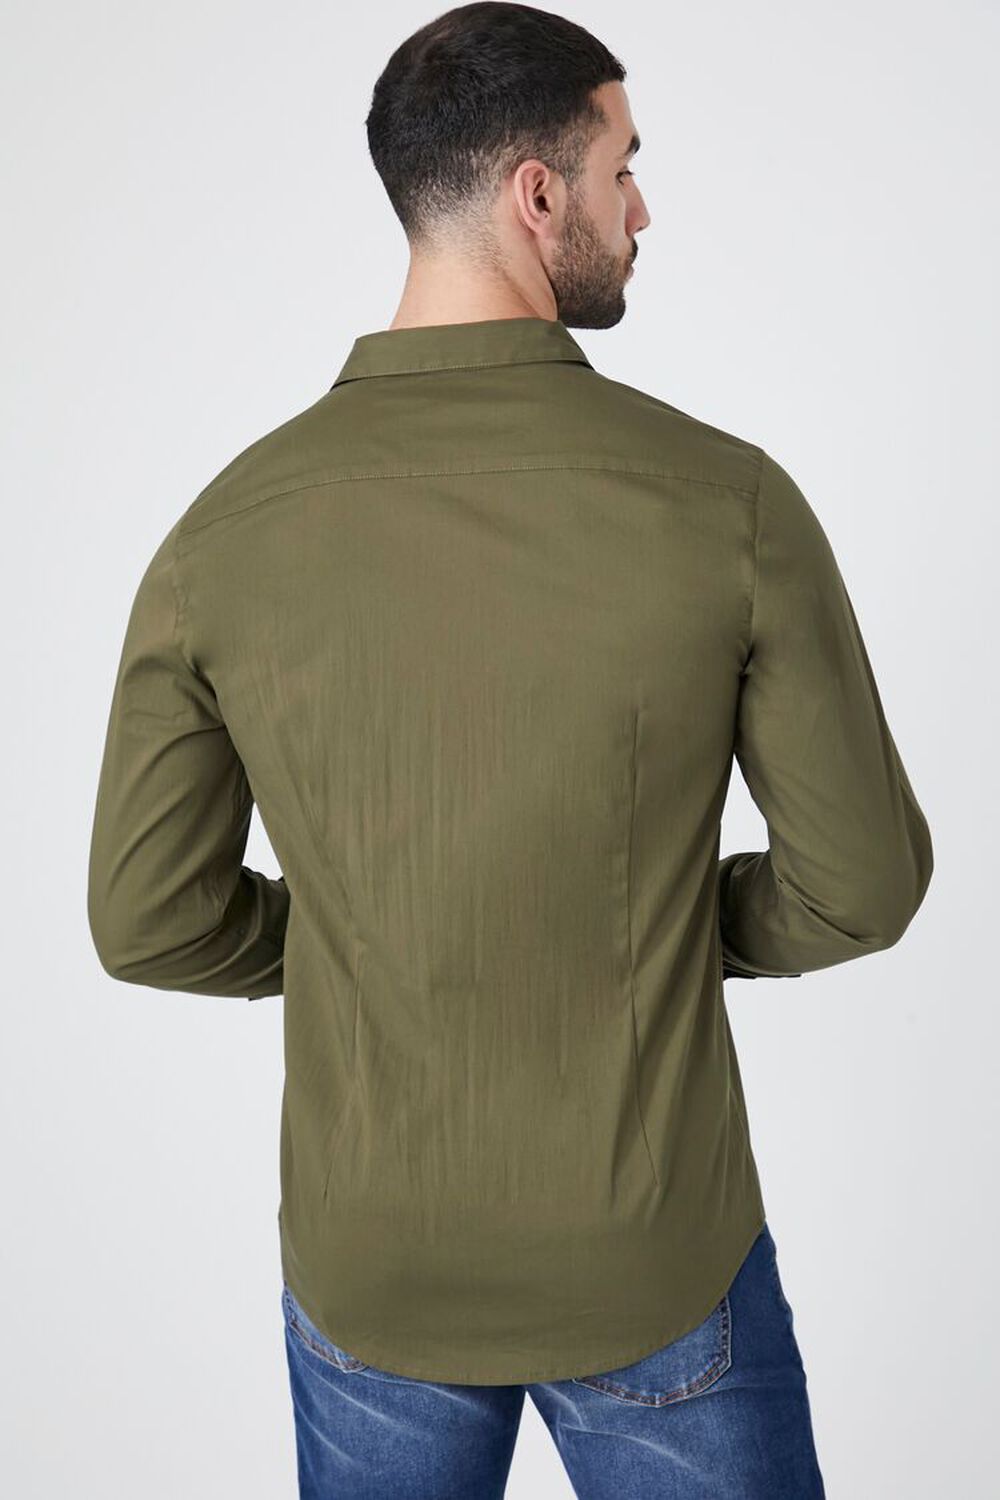 OLIVE Curved-Hem Cotton-Blend Shirt, image 3